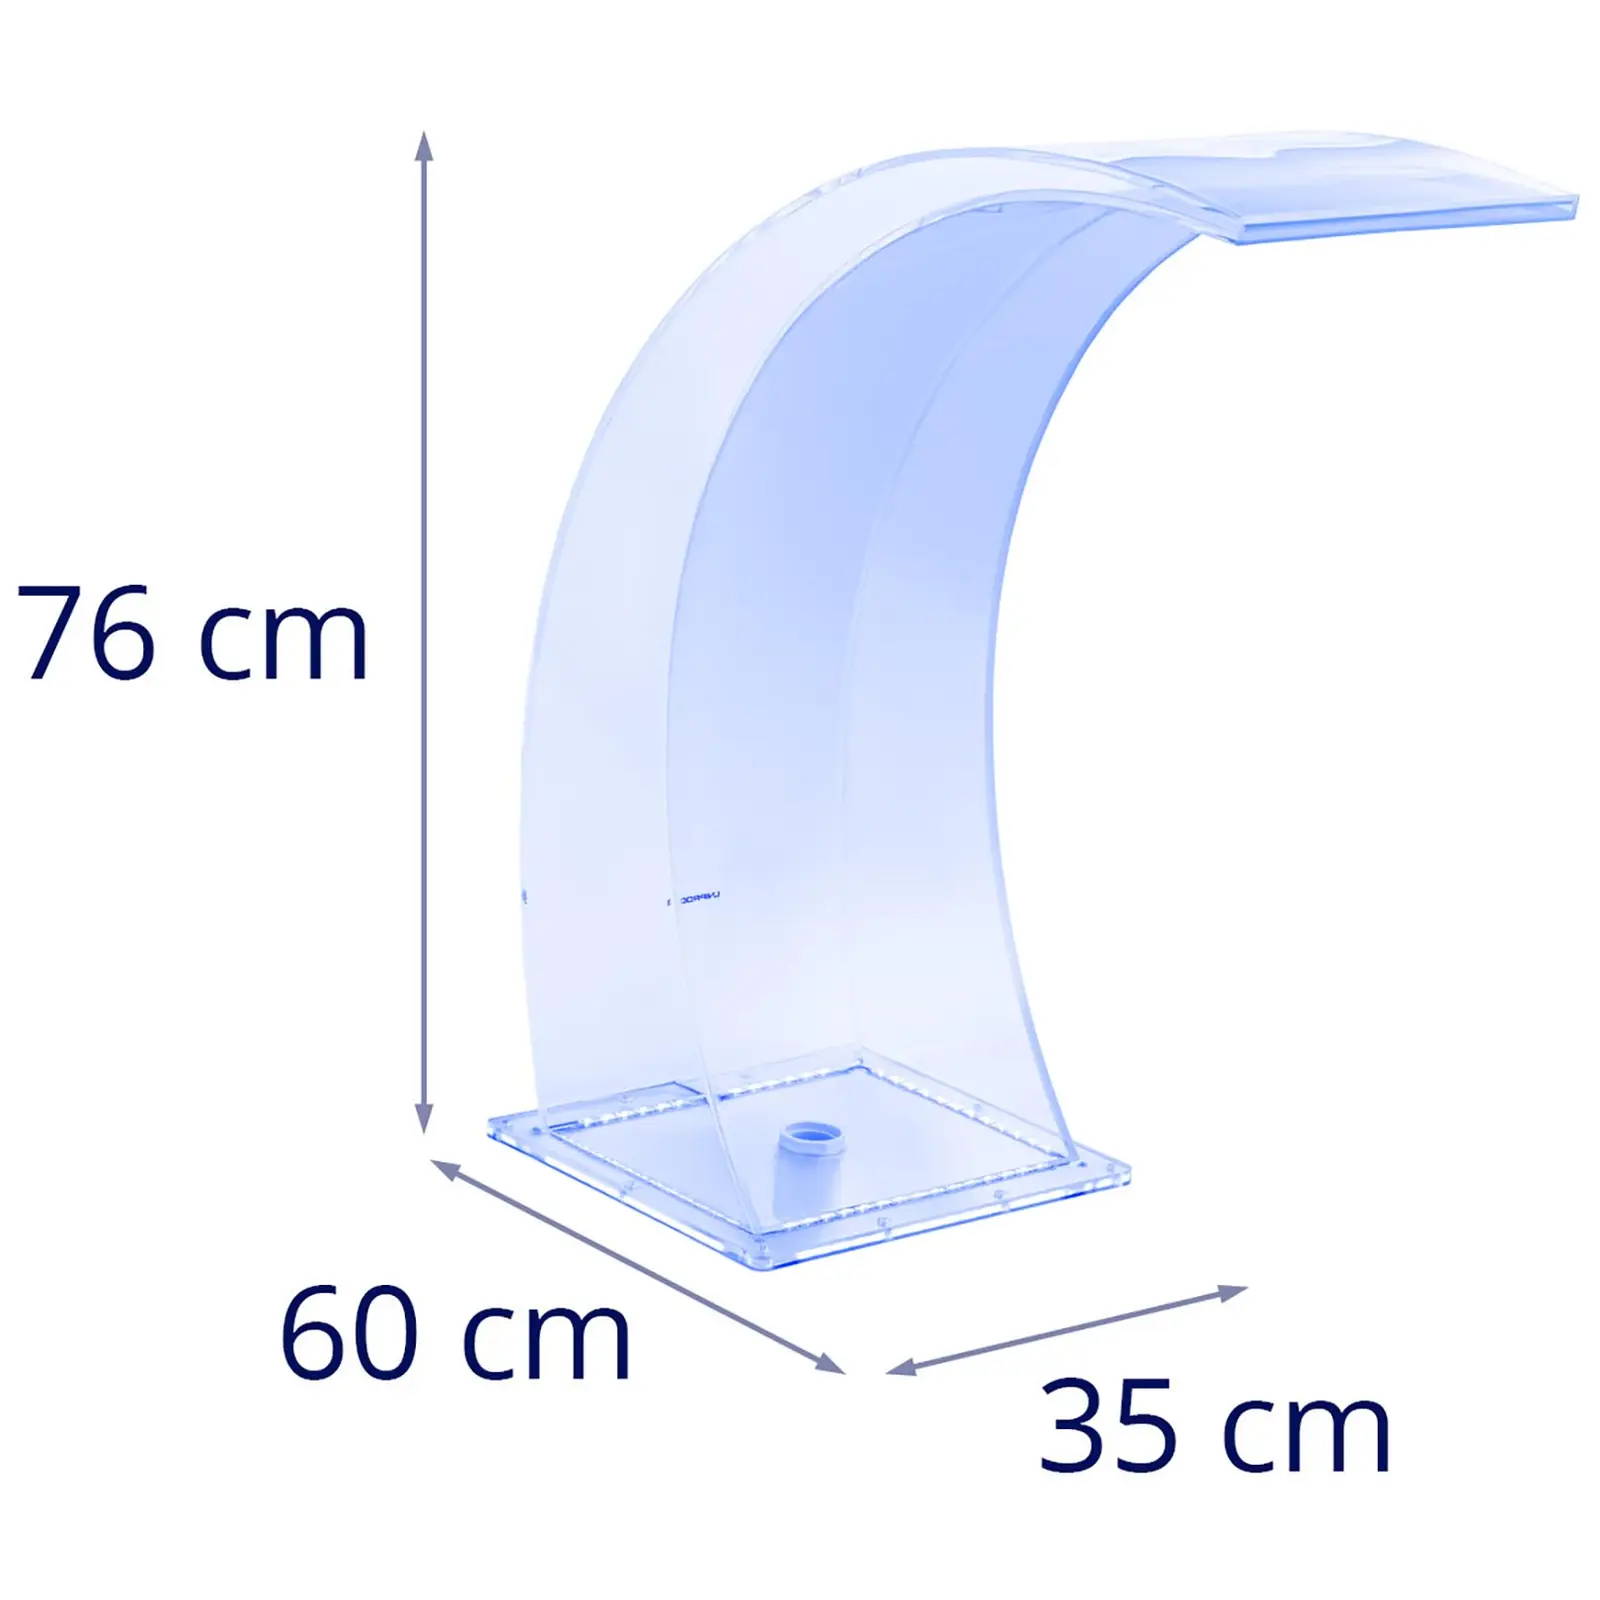 Staigus dušas - 35 cm - LED apšvietimas - Mėlyna / balta